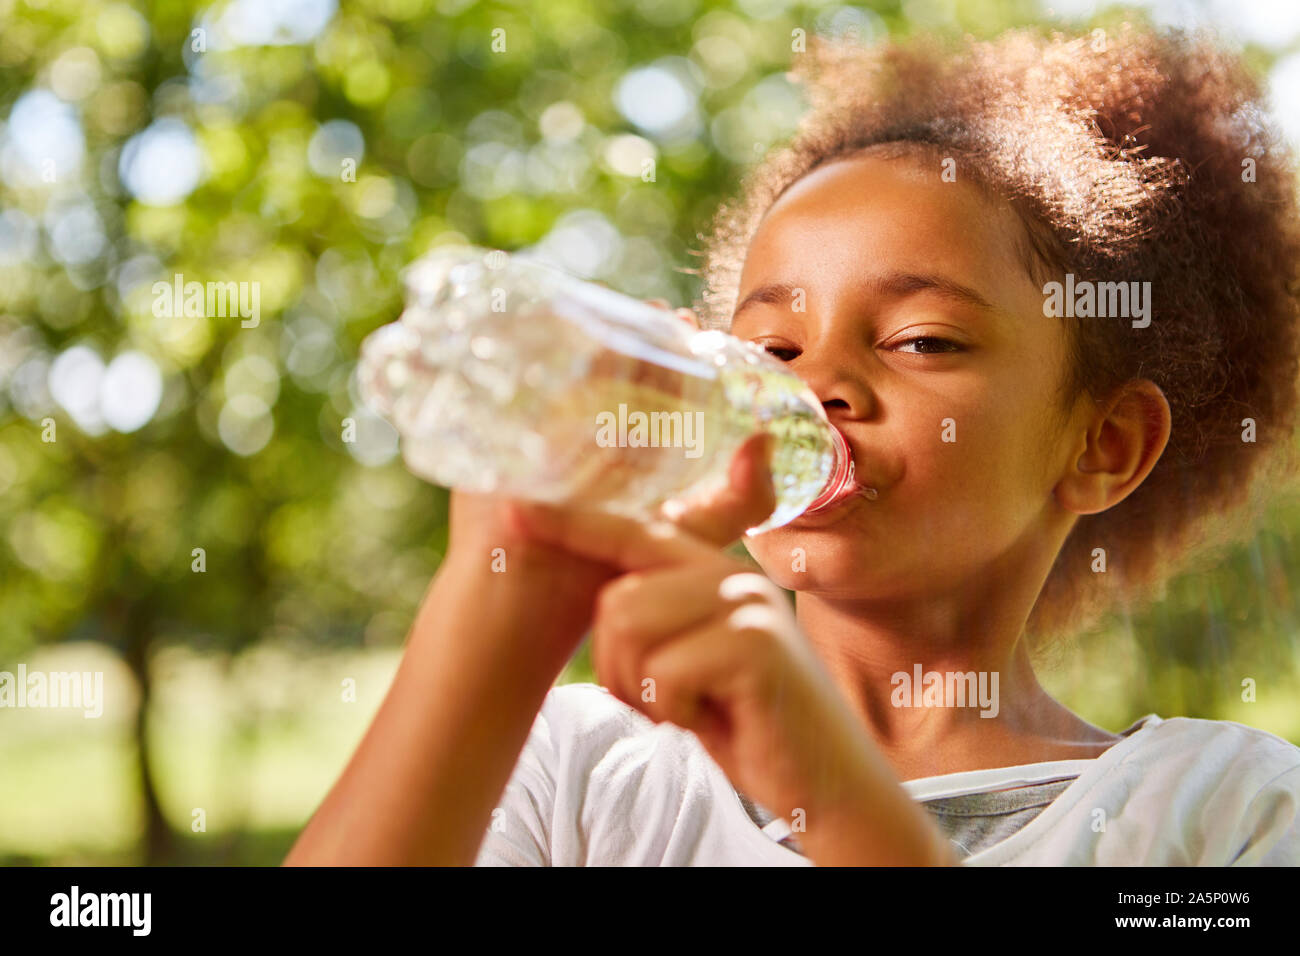 Jeune fille africaine de l'eau en bouteille de boissons une bouteille Banque D'Images